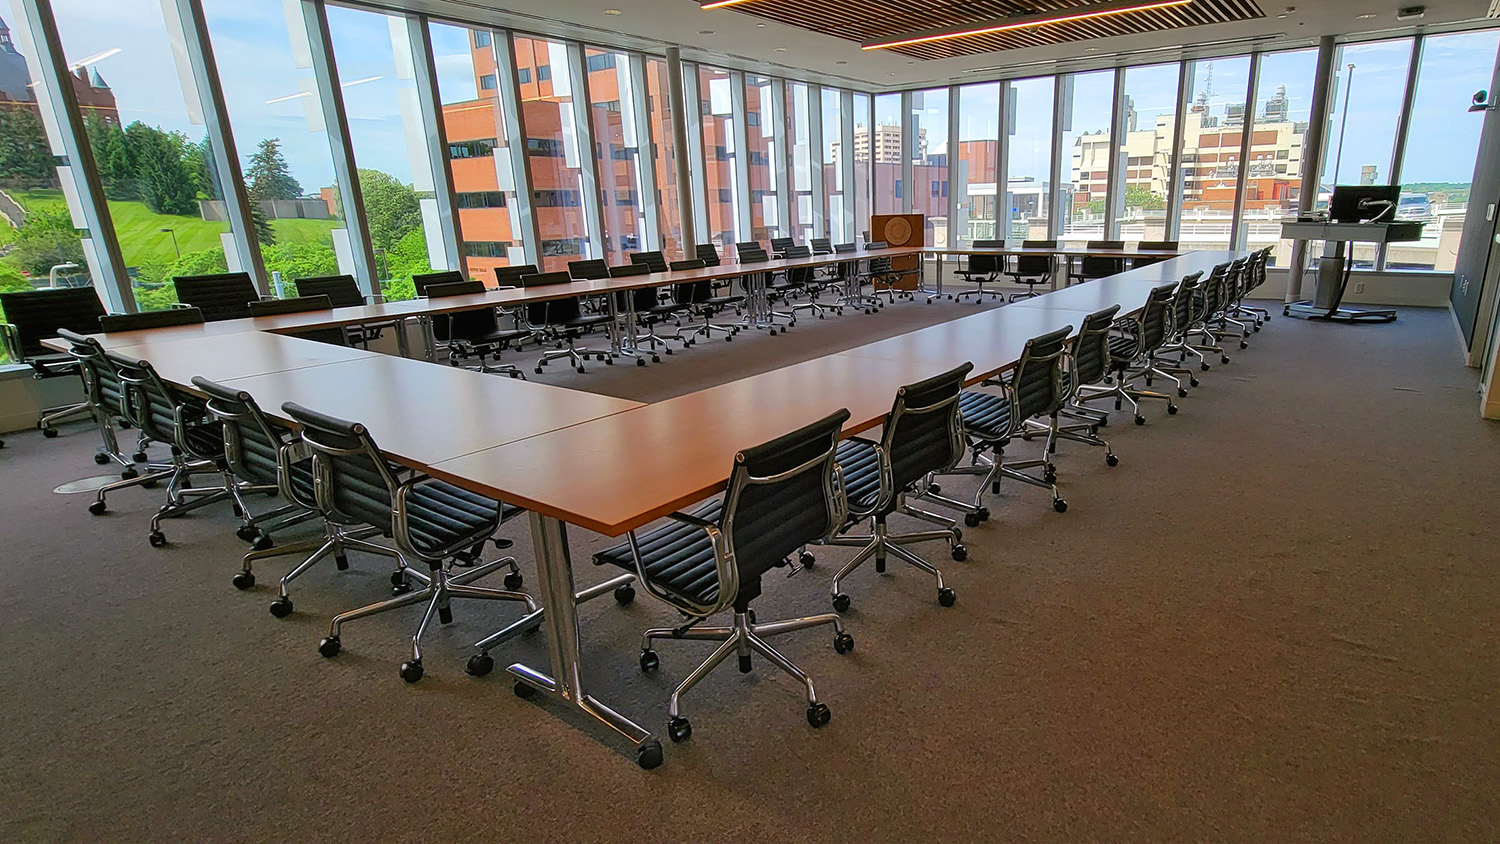 Les espaces de réunion, comme la salle de conférence 330, incluent une grille de commutation avec scaler DTP CrossPoint 4K pour le routage des signaux, l'audio, et le contrôle, avec le modèle spécifique en fonction des ressources et des dimensions de chaque espace. Reproductions autorisées par Steve Sartori, Université de Syracuse.